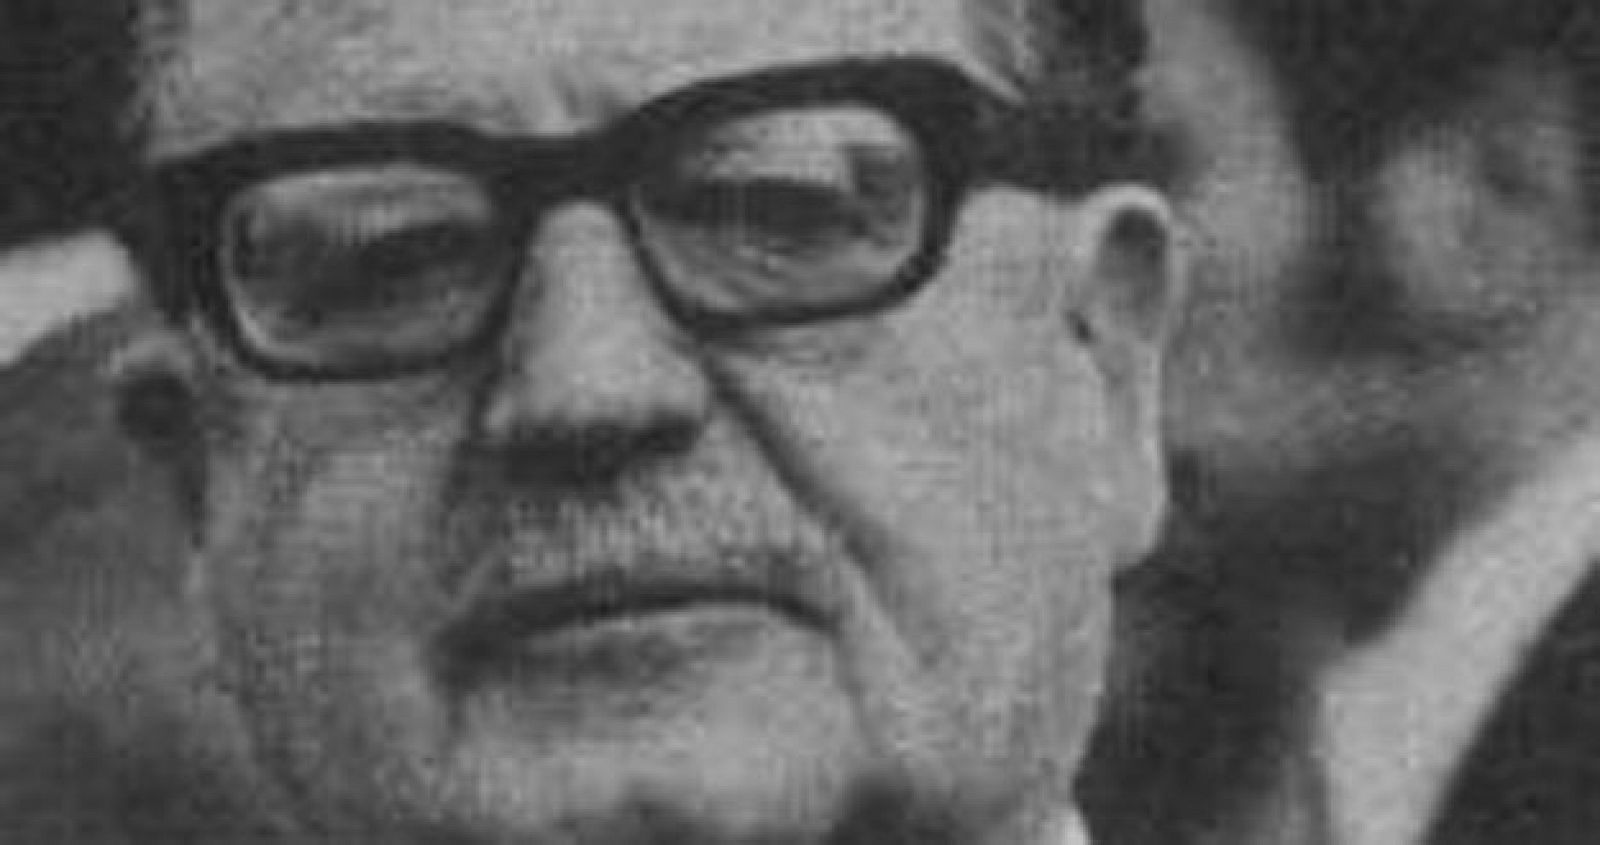 El 11 de septiembre de 1973 Salvador Allende murió tras el asalto de los militares golpistas al Palacio de la Moneda.